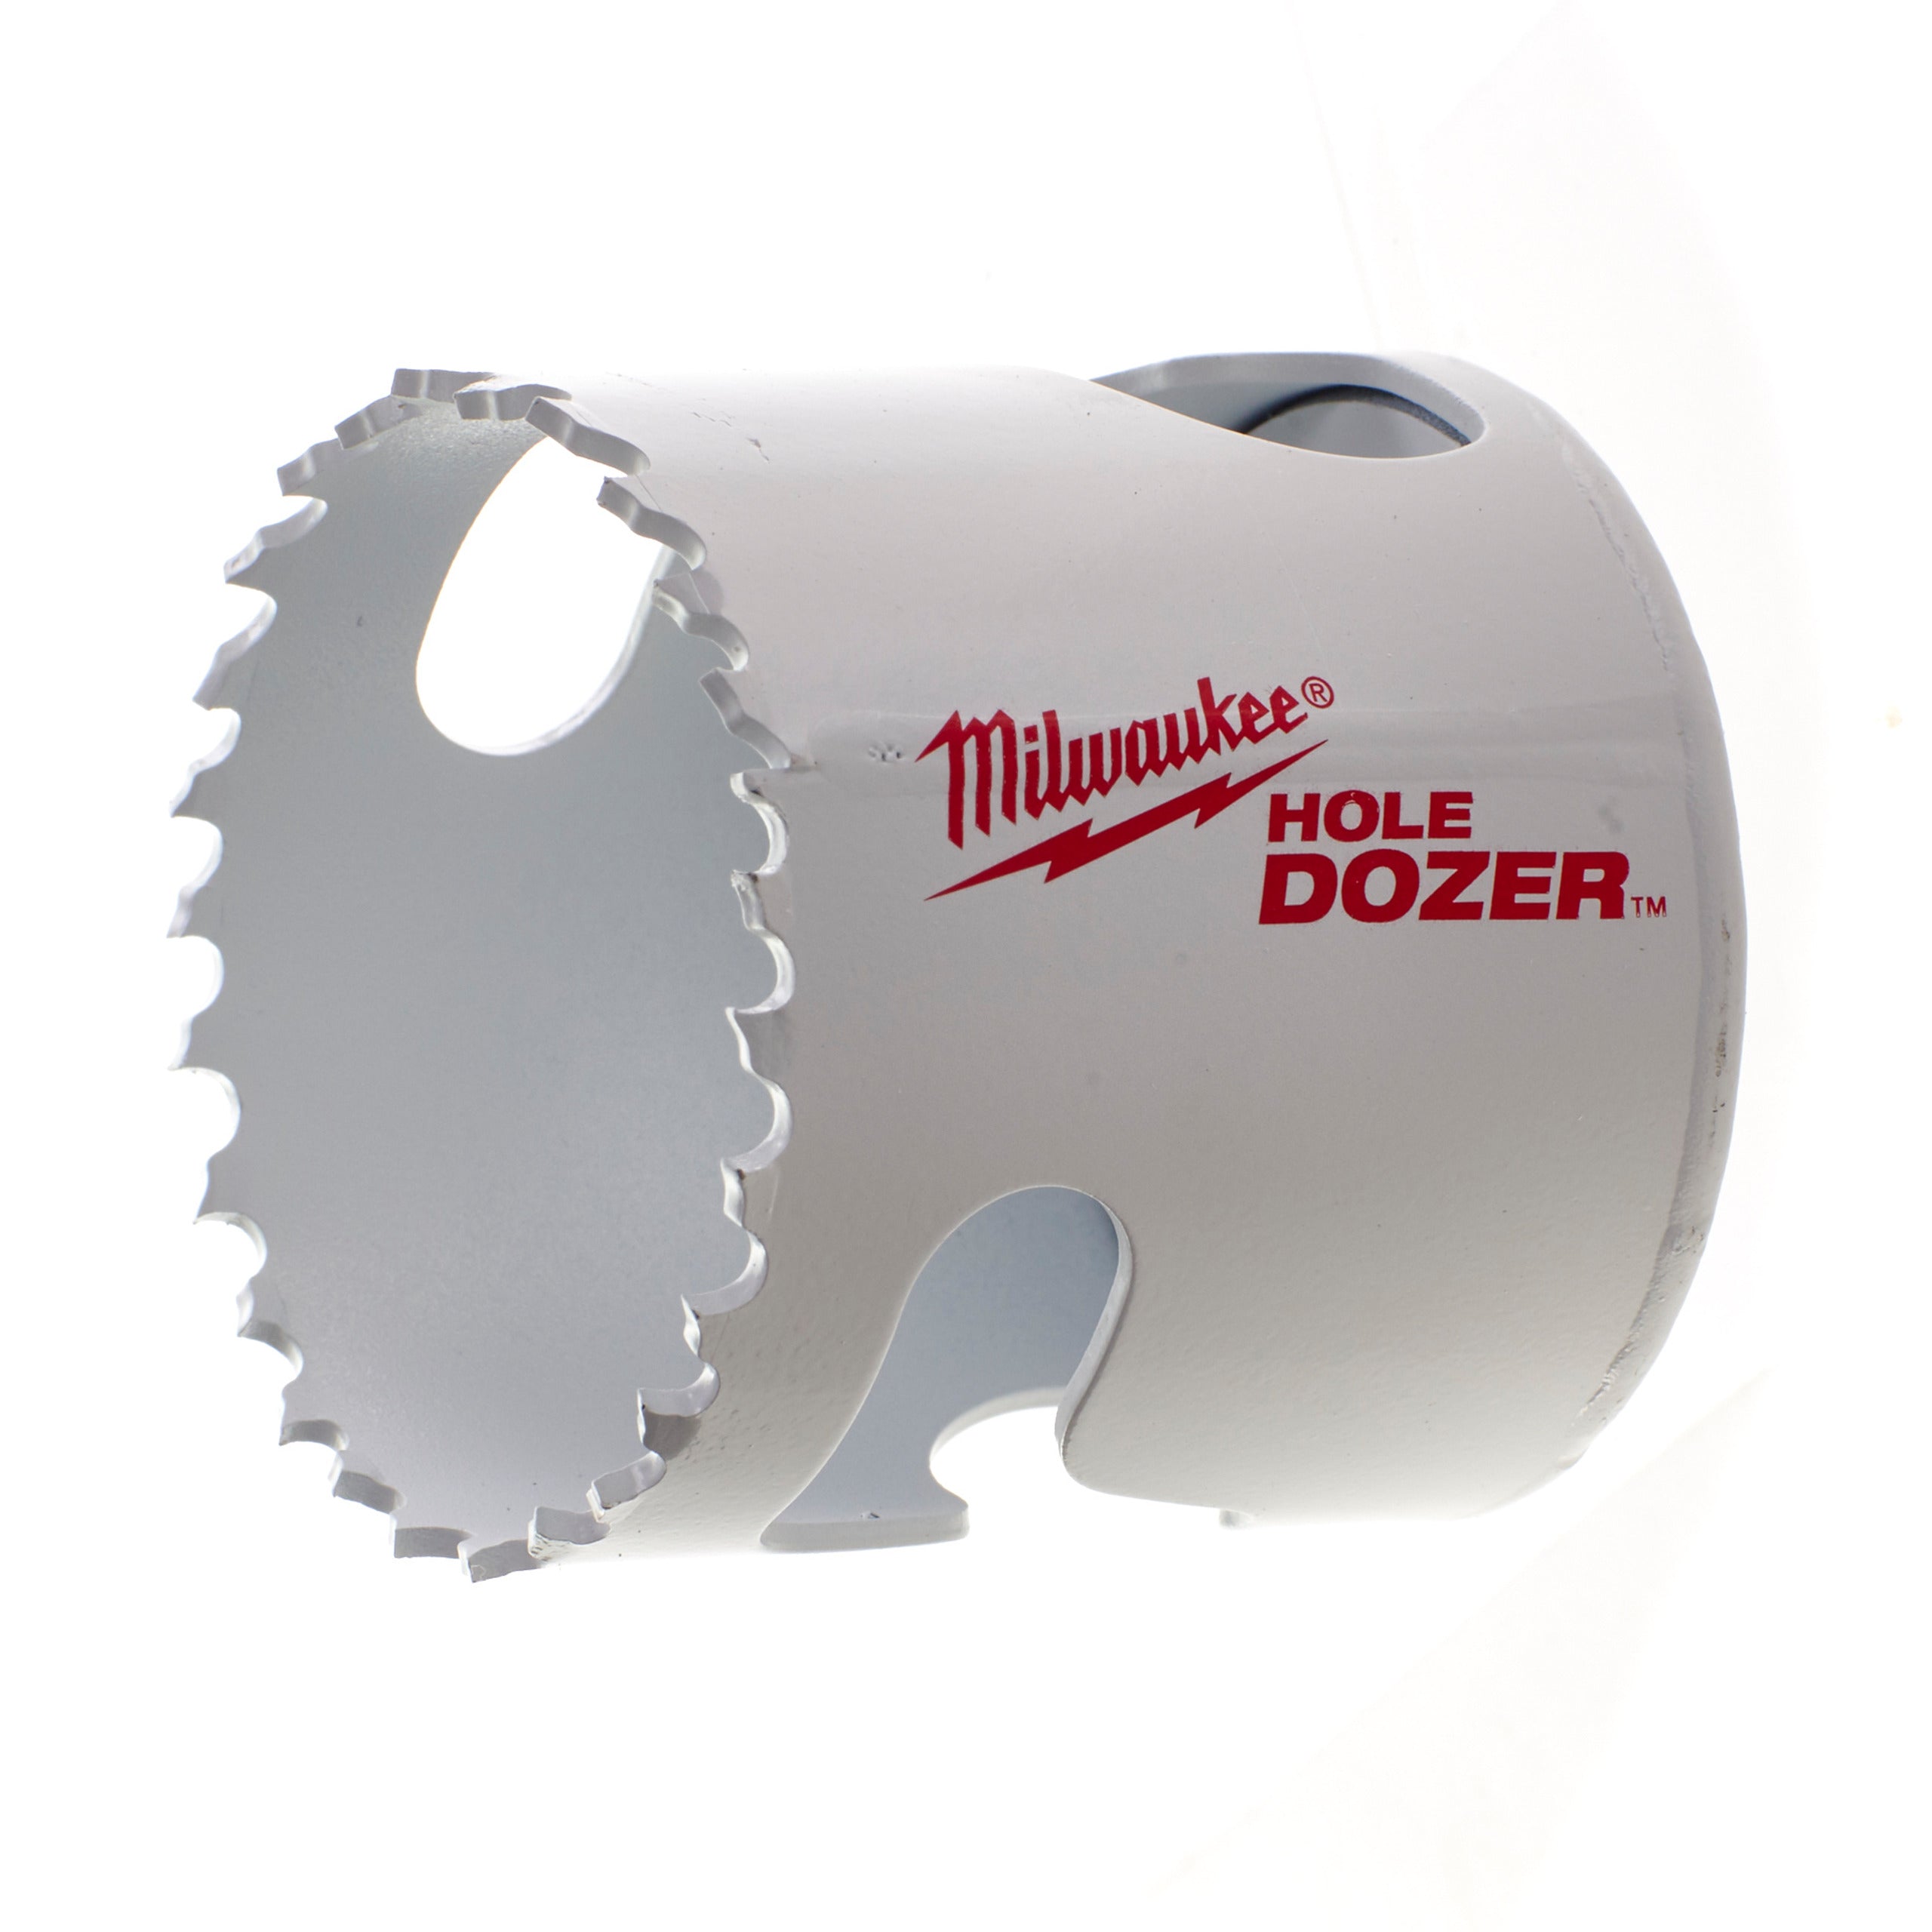 Carotă Milwaukee HOLE DOZER™ bi-metal Ø50 mm 49560113